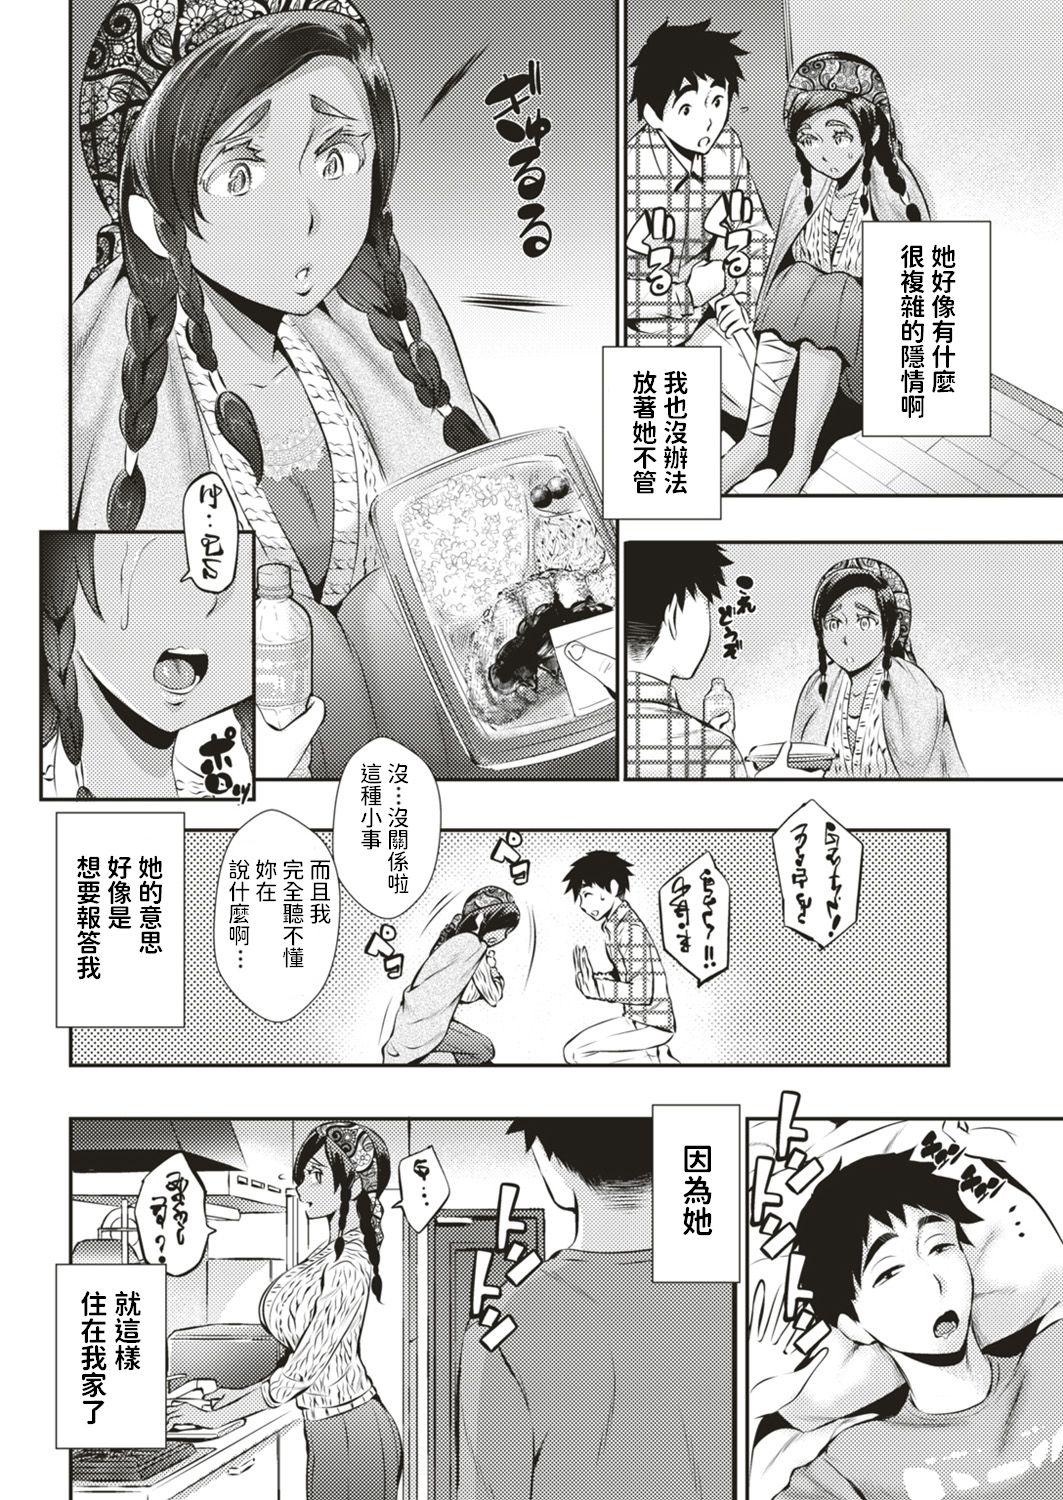 First Katakoto no Koi Blowjobs - Page 2